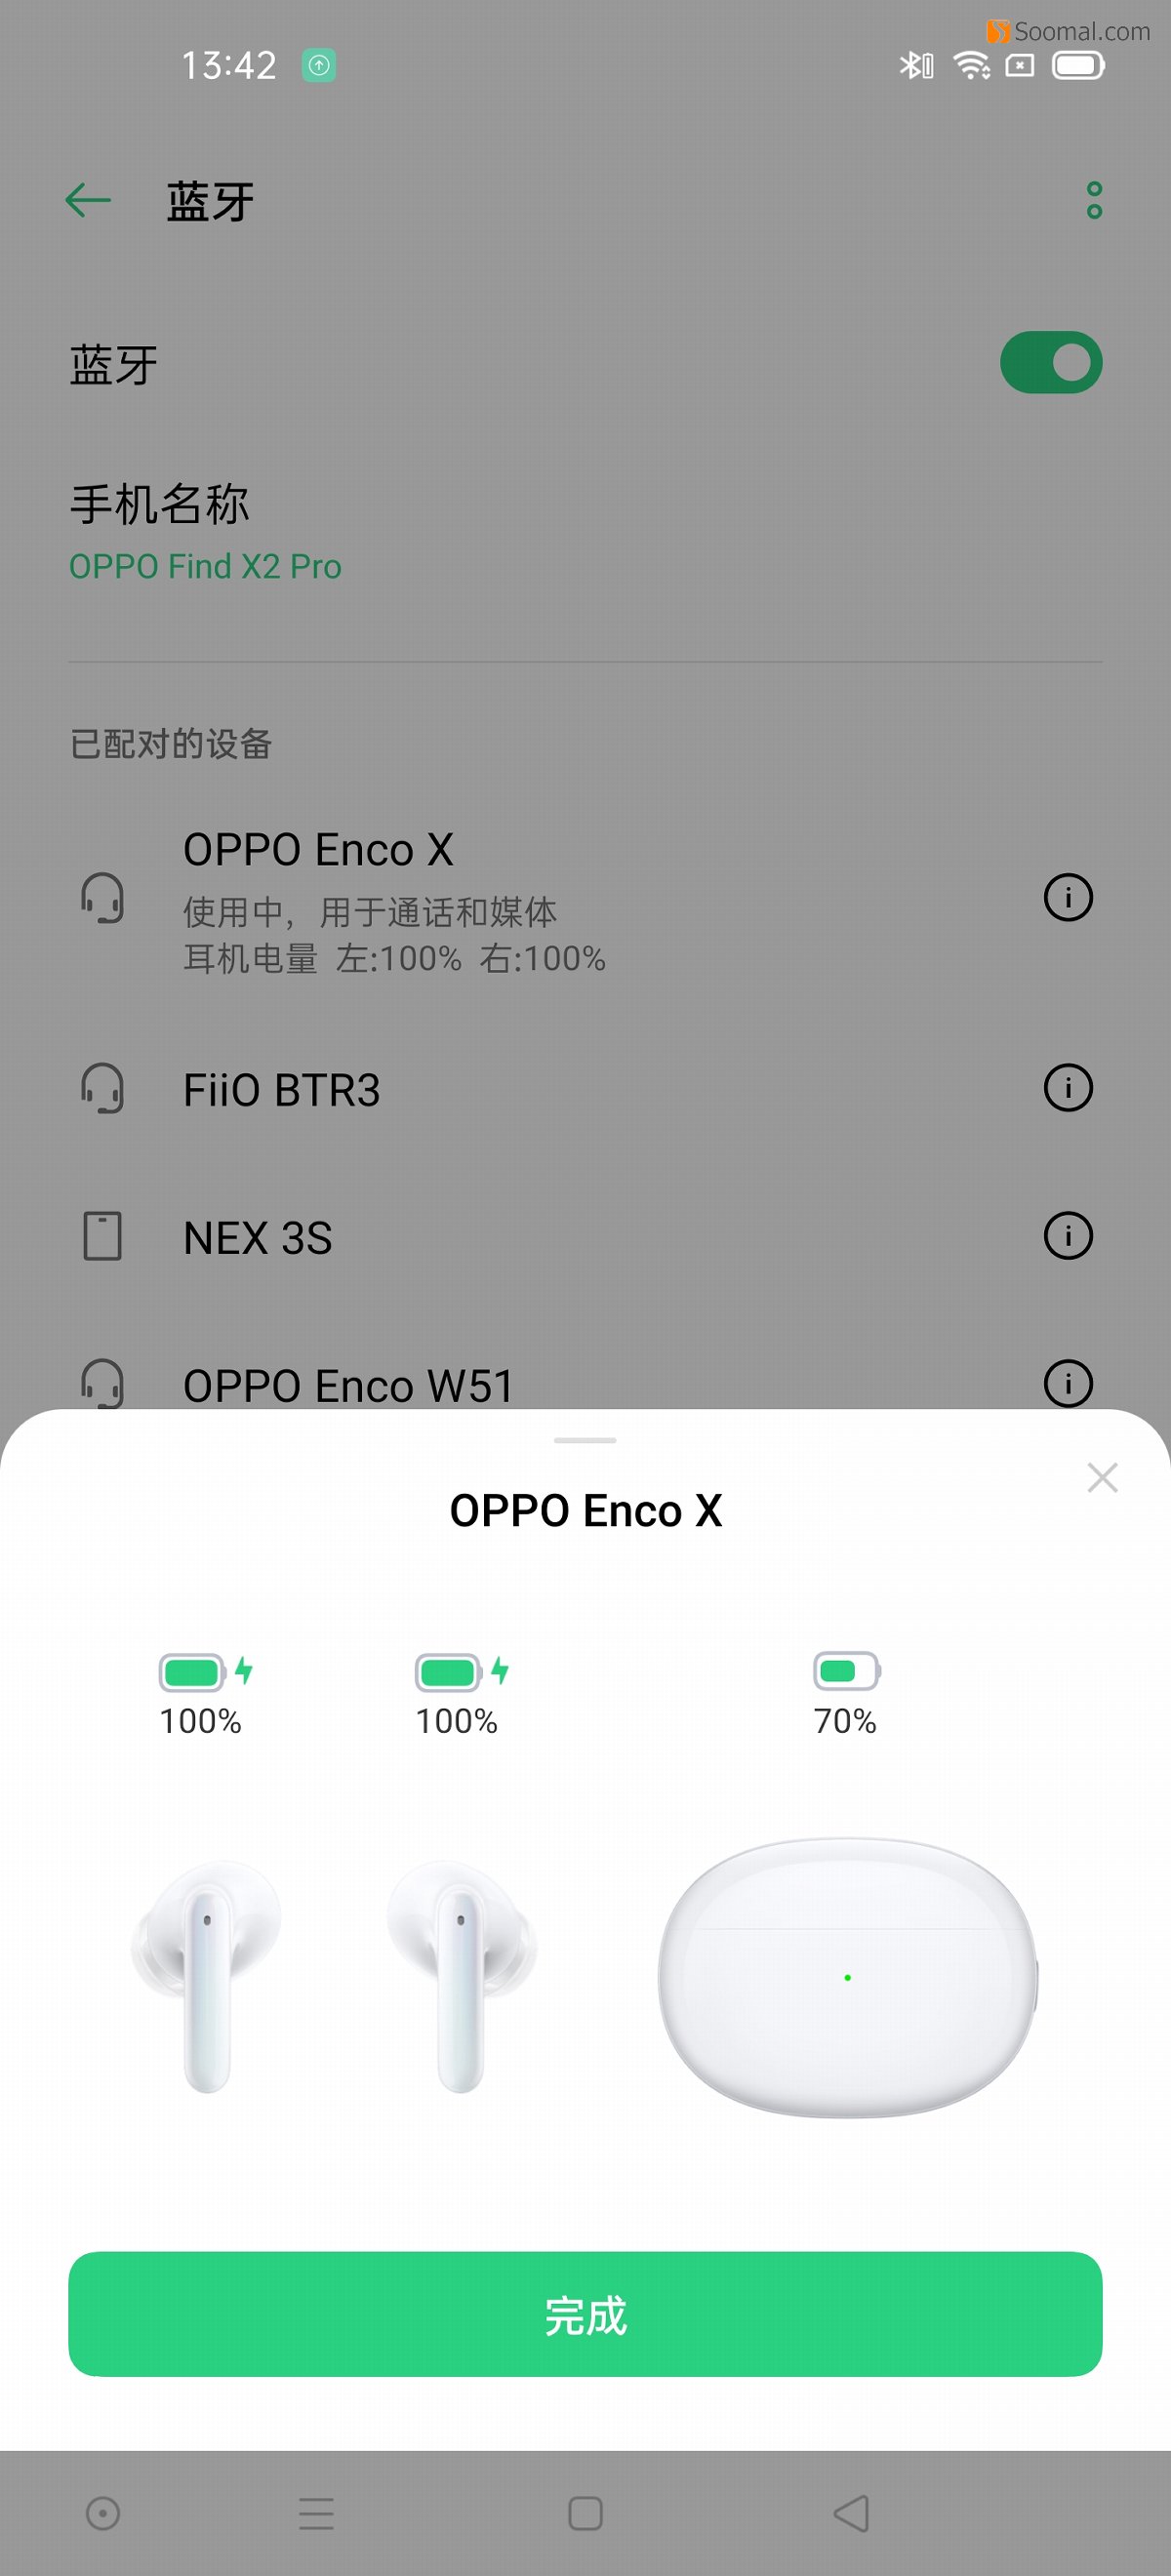 OPPO Enco X 蓝牙真无线主动降噪耳机测评报告 「Soomal」